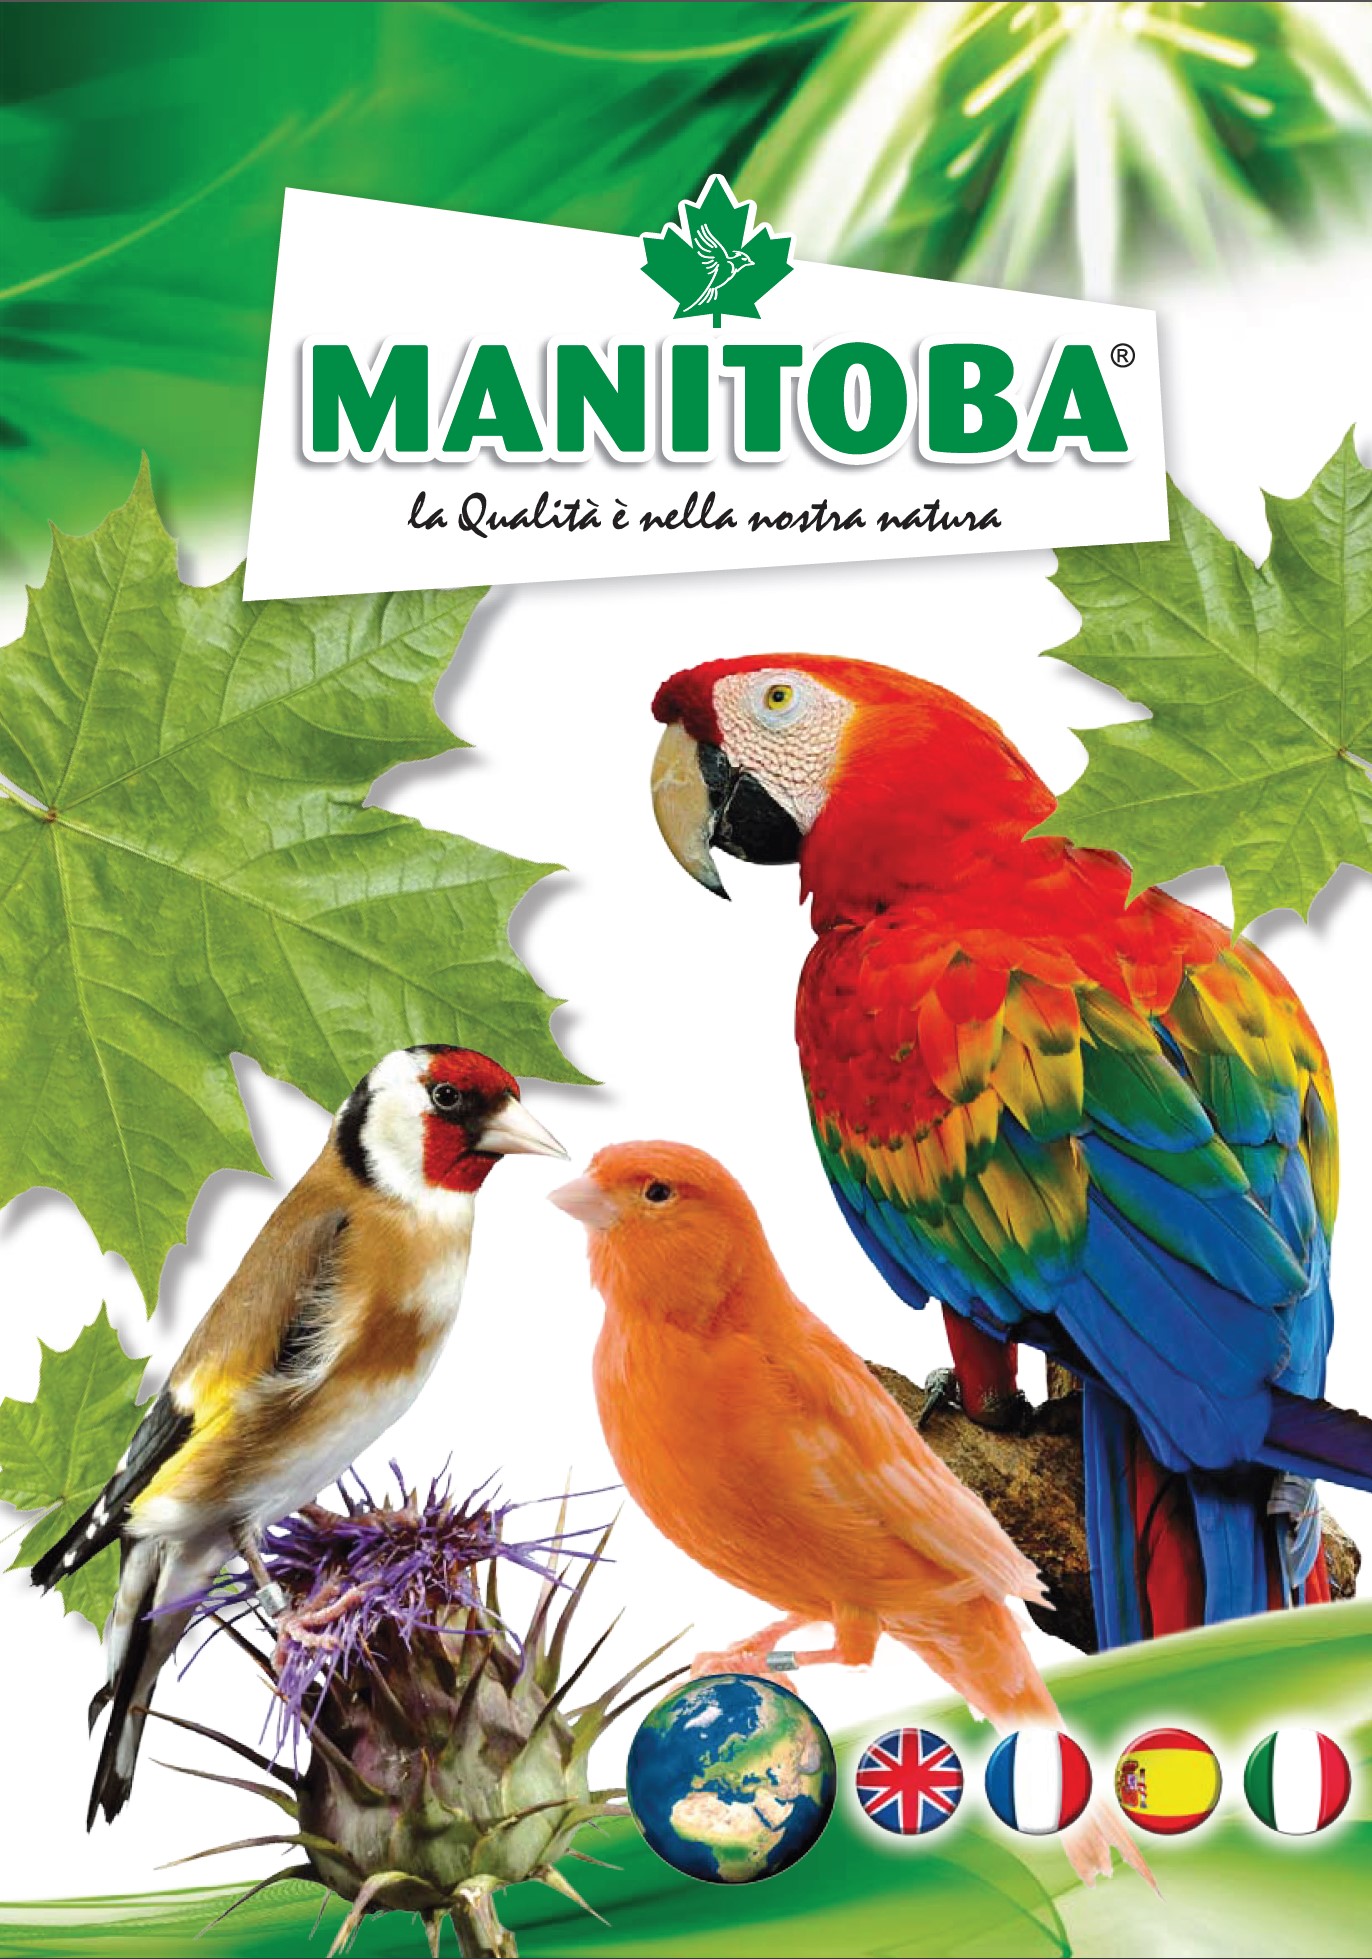 Manitoba srl catalog world